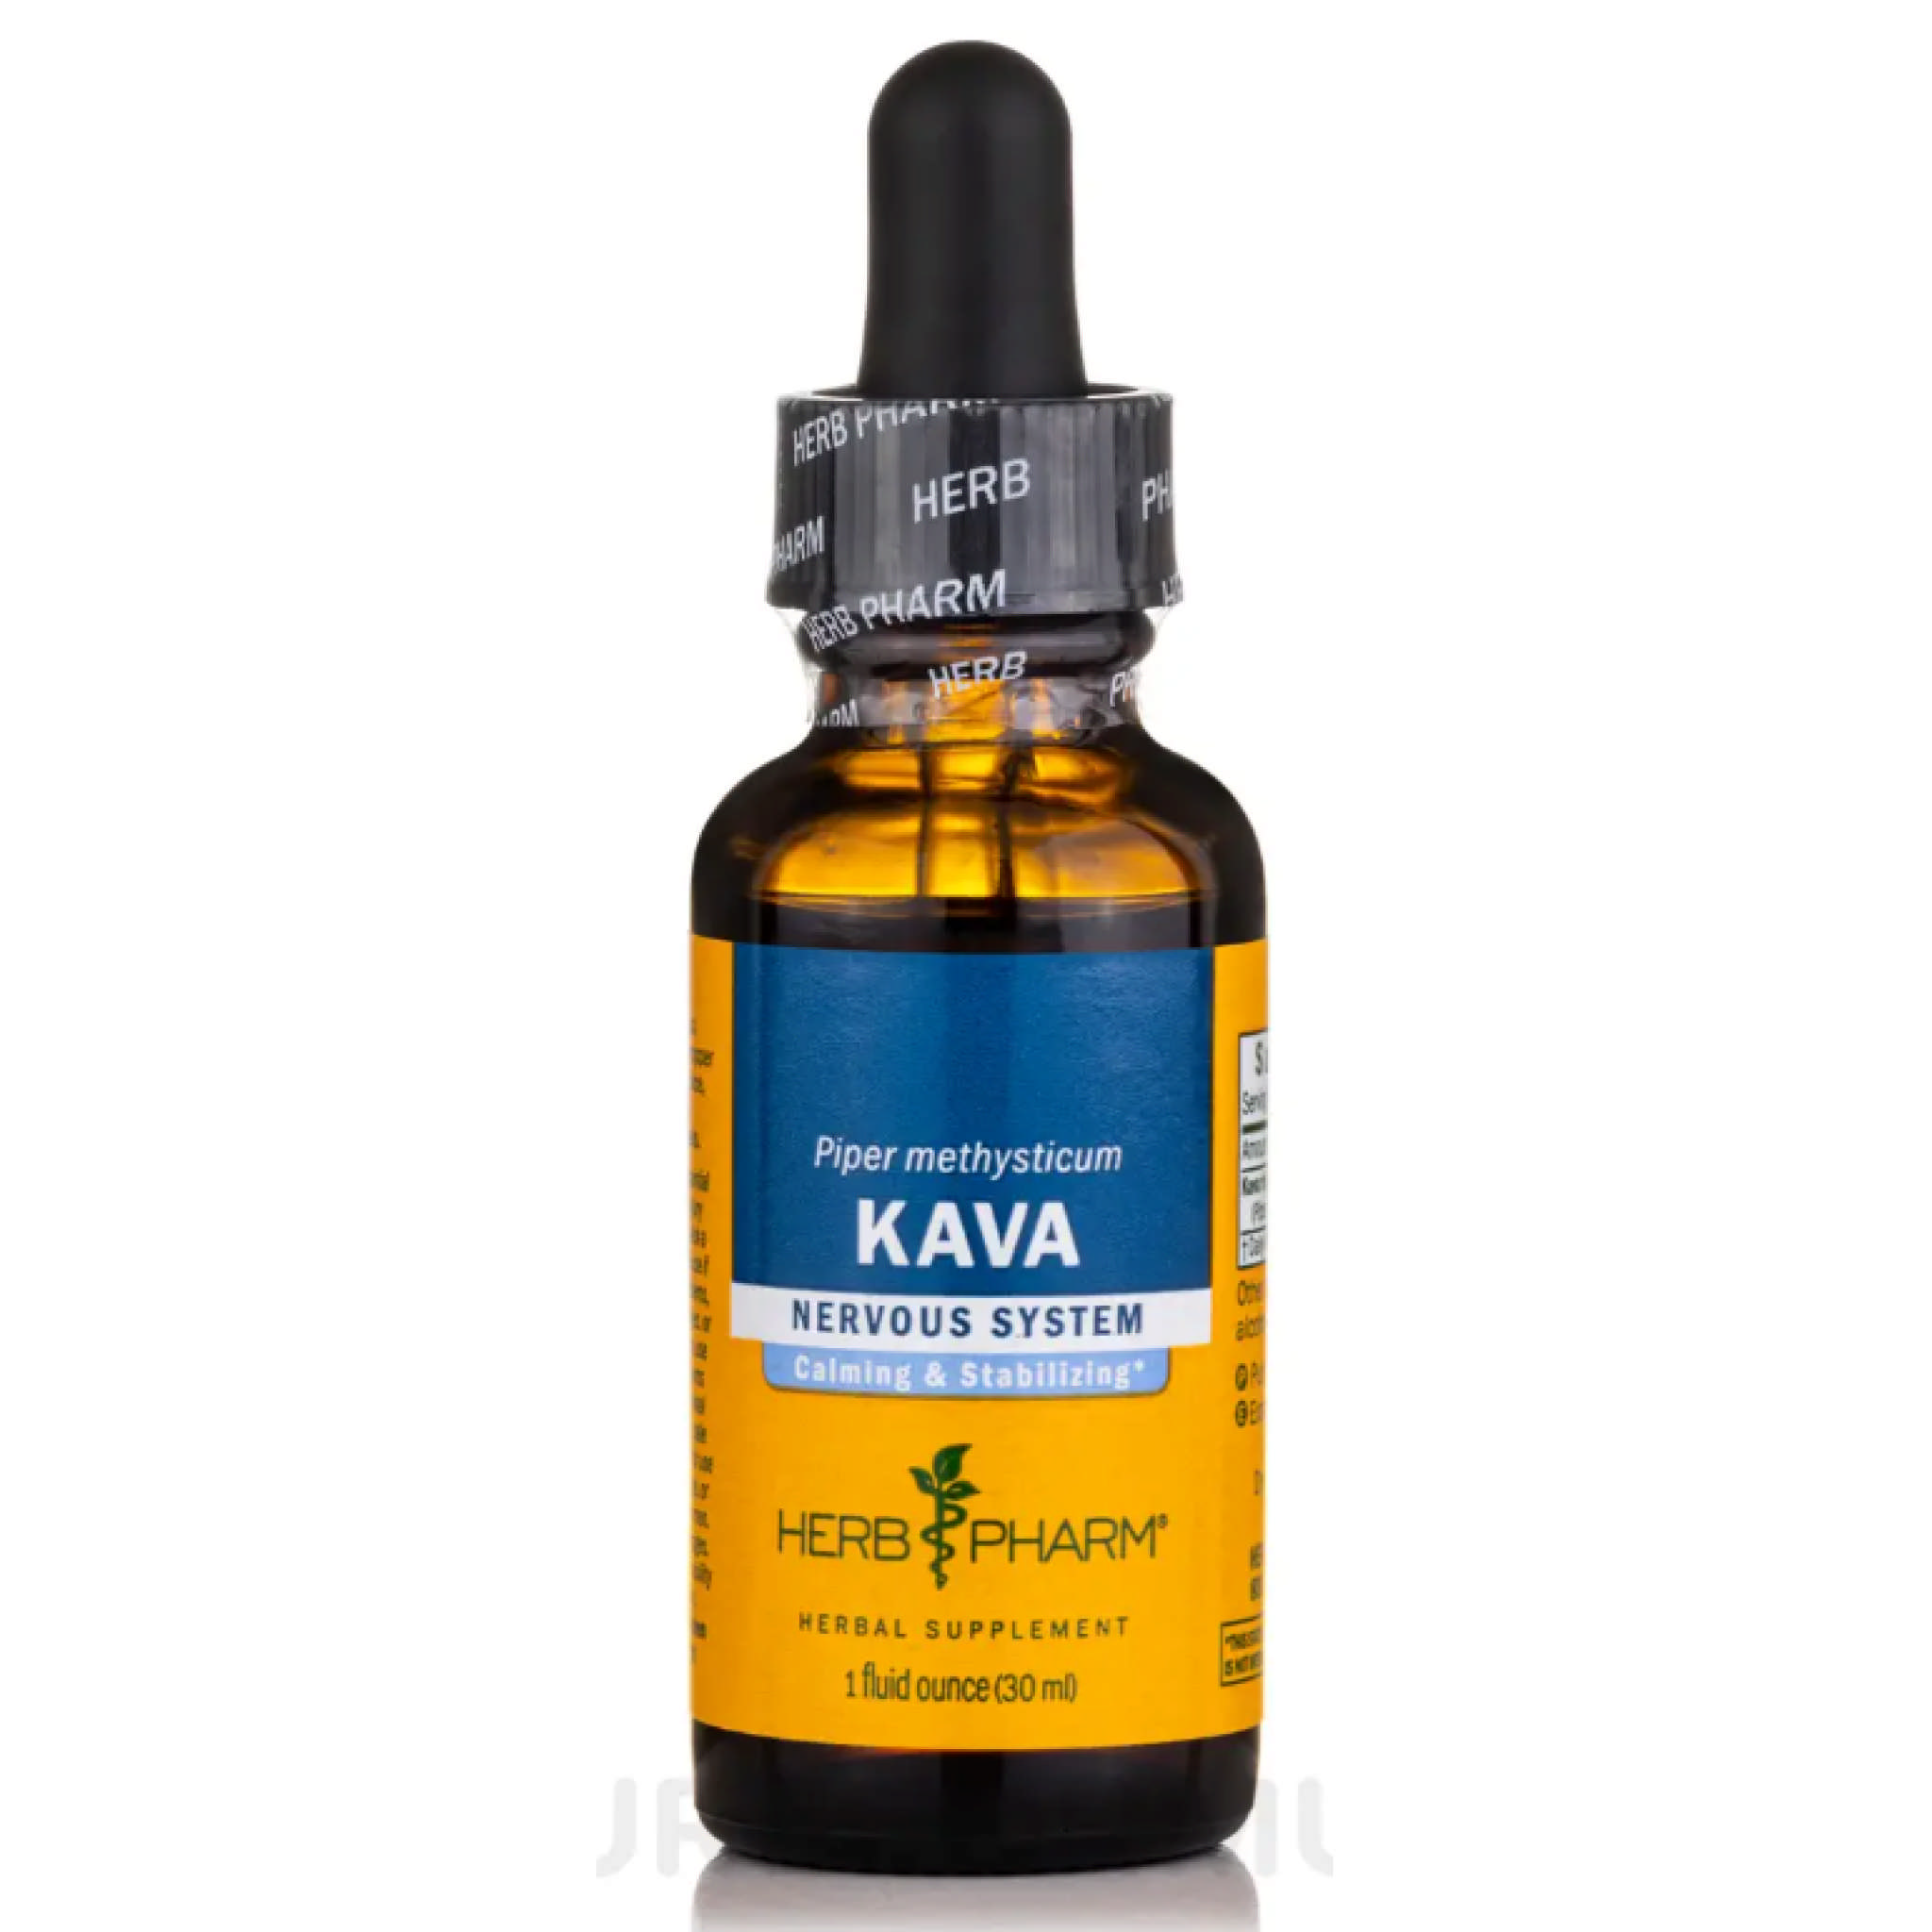 Herb Pharm - Kava (Pharma Kava)